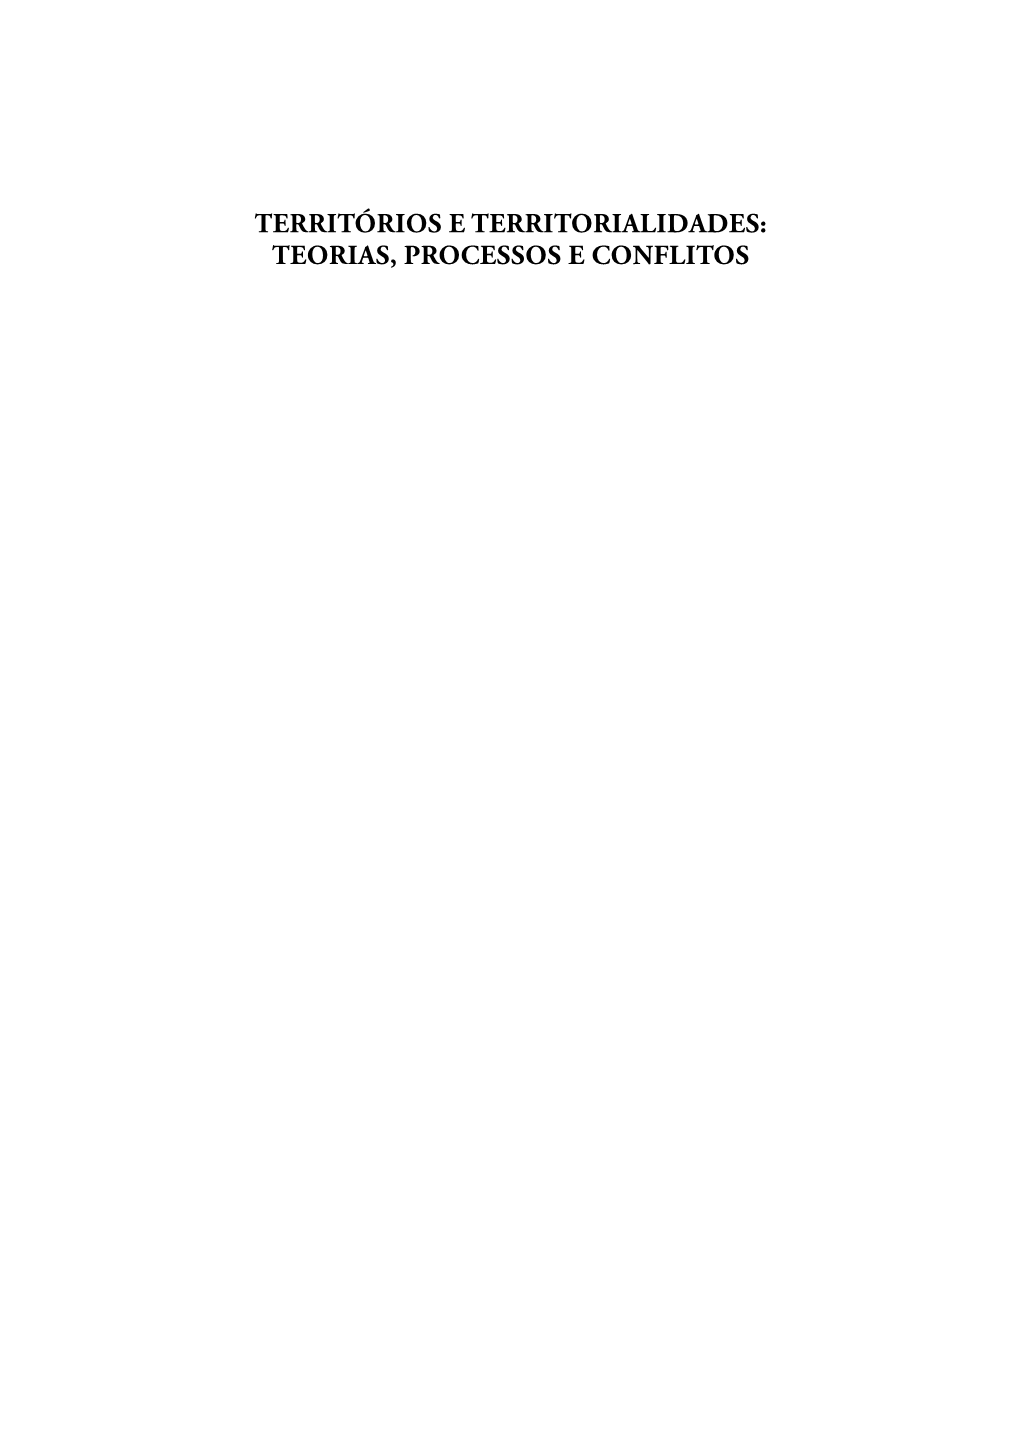 Territórios E Territorialidades: Teorias, Processos E Conflitos